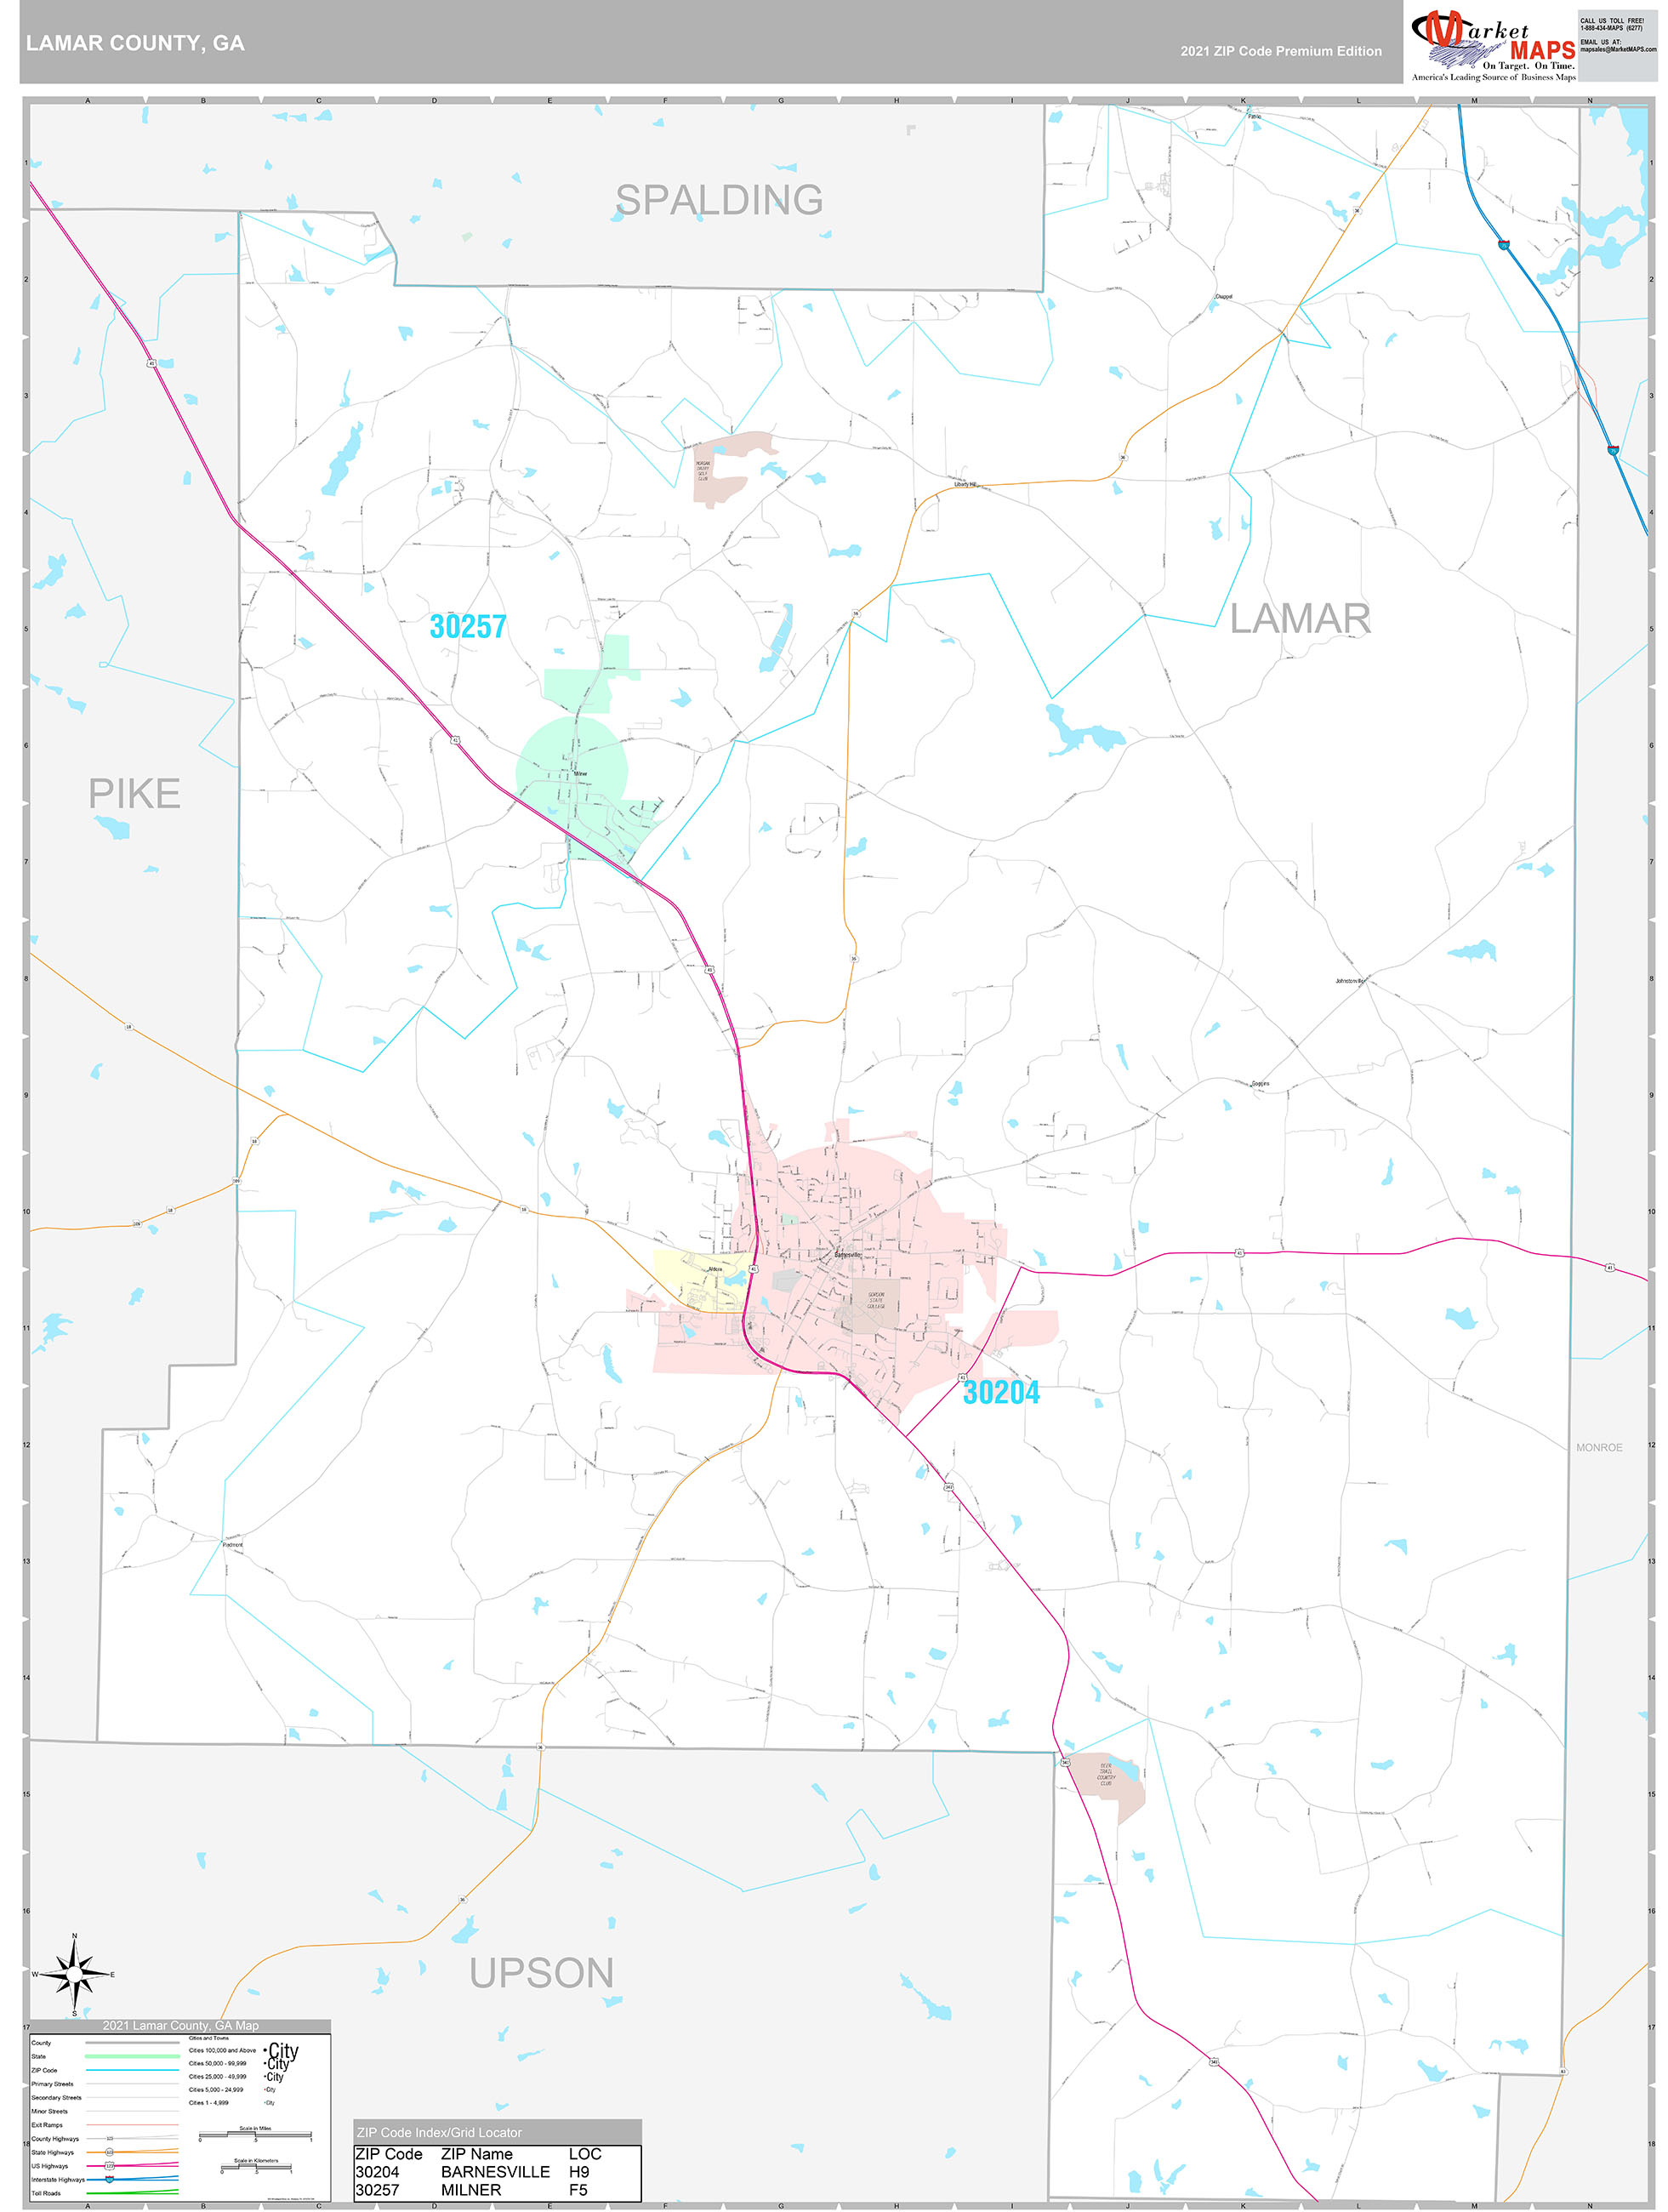 Lamar County, GA Wall Map Premium Style by MarketMAPS - MapSales